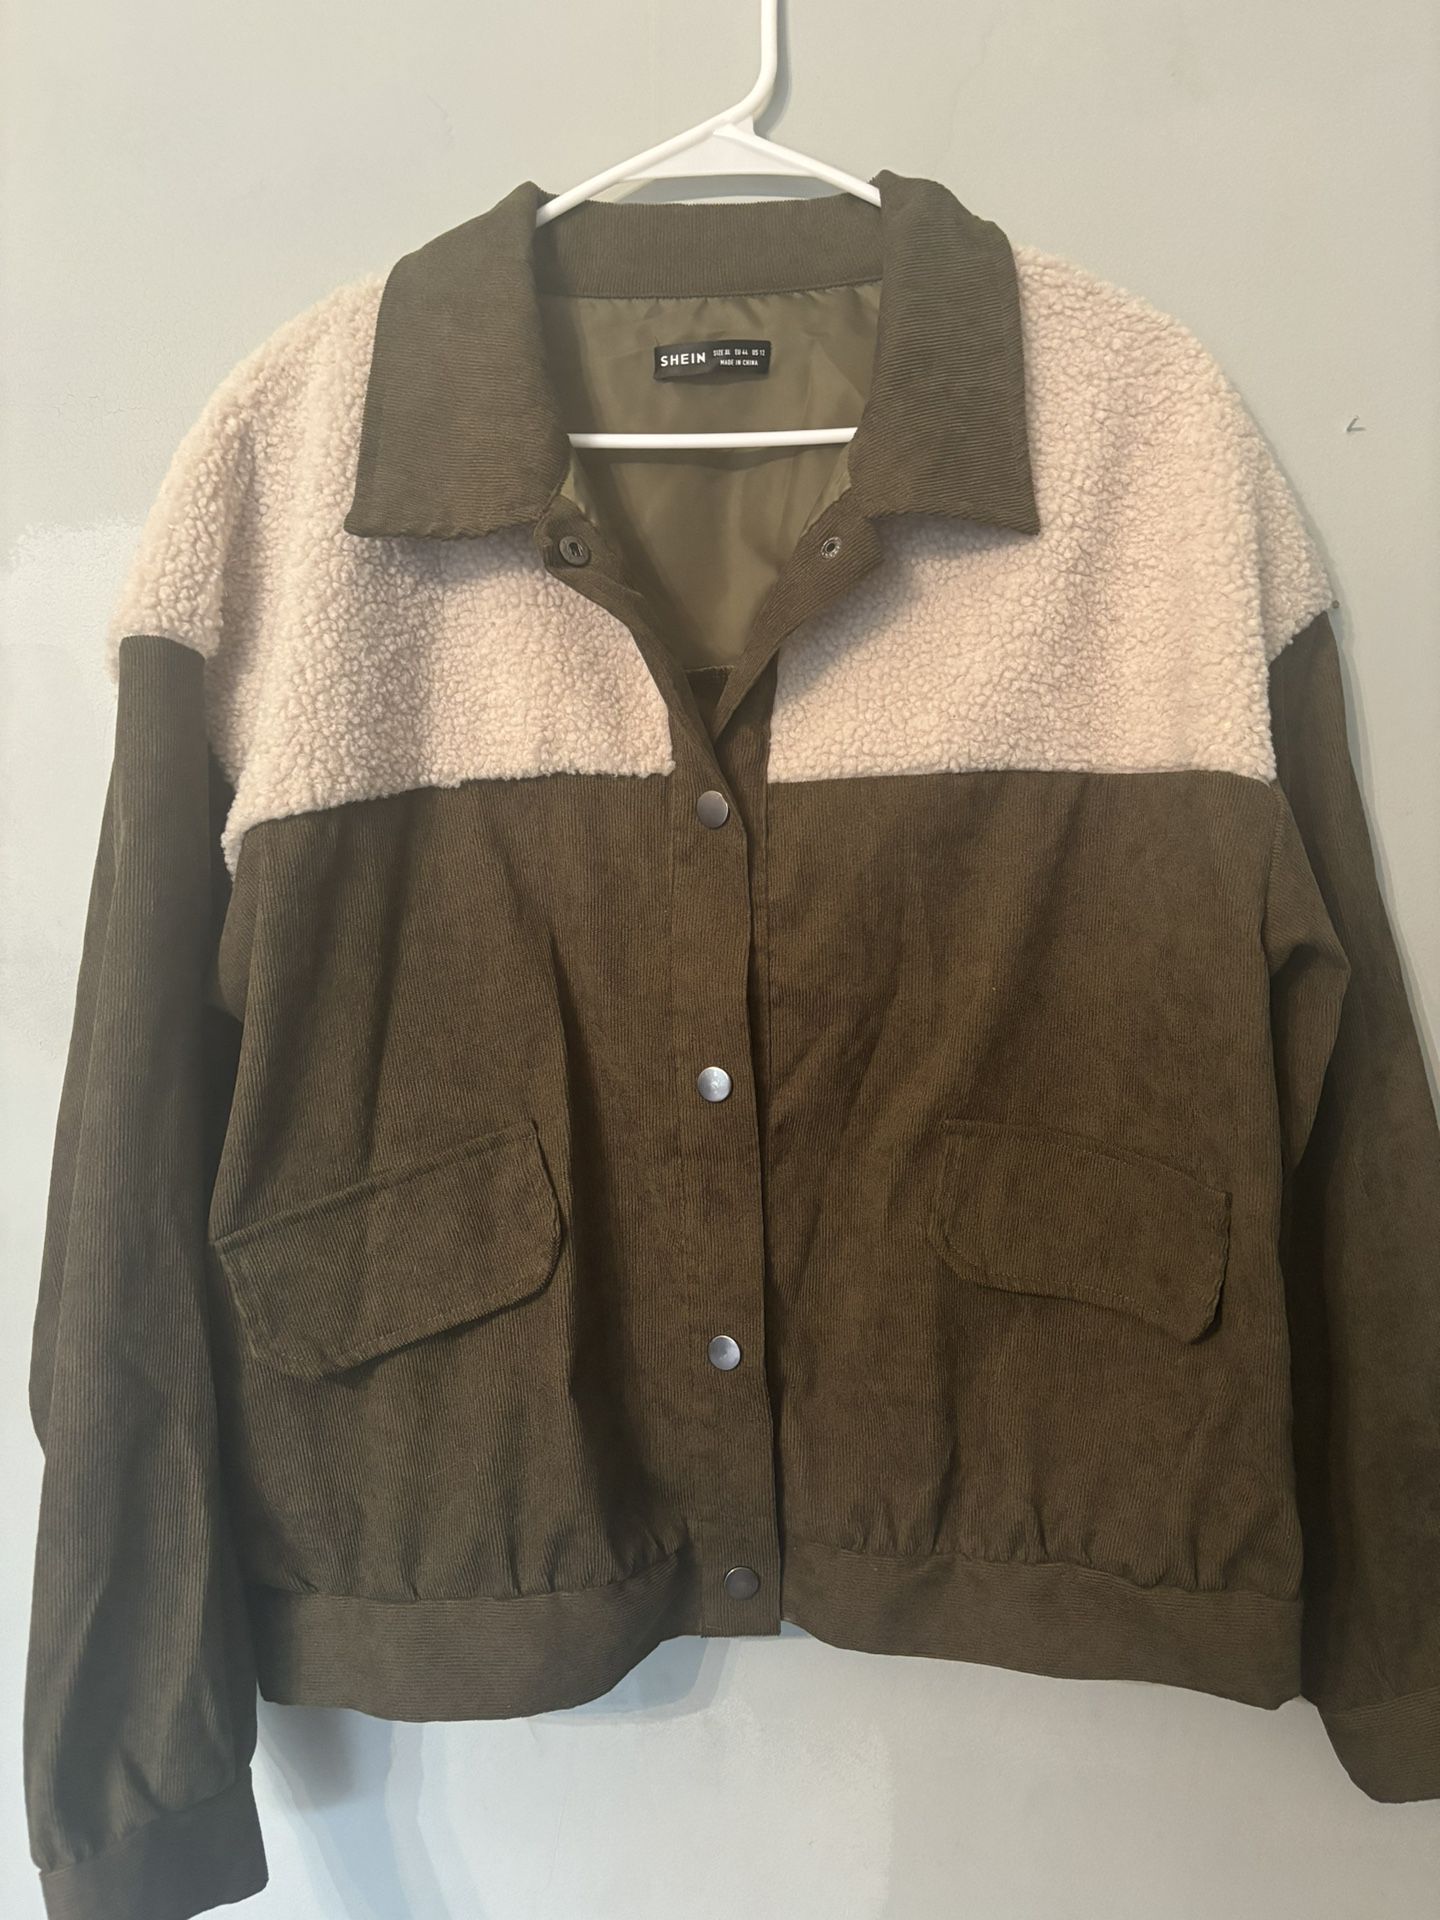 Corduroy Fleece Jacket